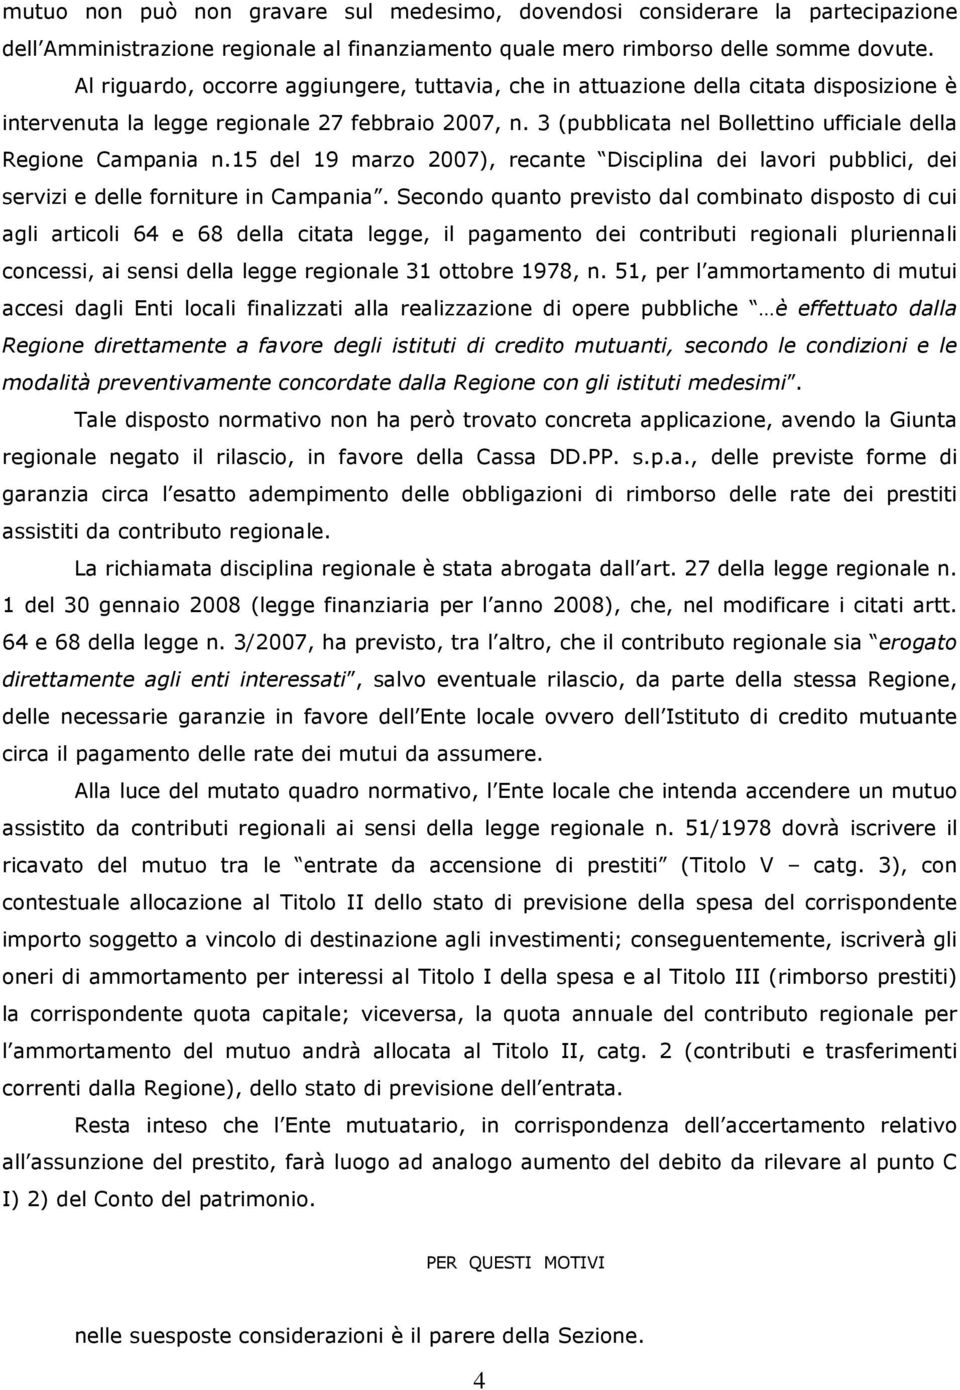 3 (pubblicata nel Bollettino ufficiale della Regione Campania n.15 del 19 marzo 2007), recante Disciplina dei lavori pubblici, dei servizi e delle forniture in Campania.